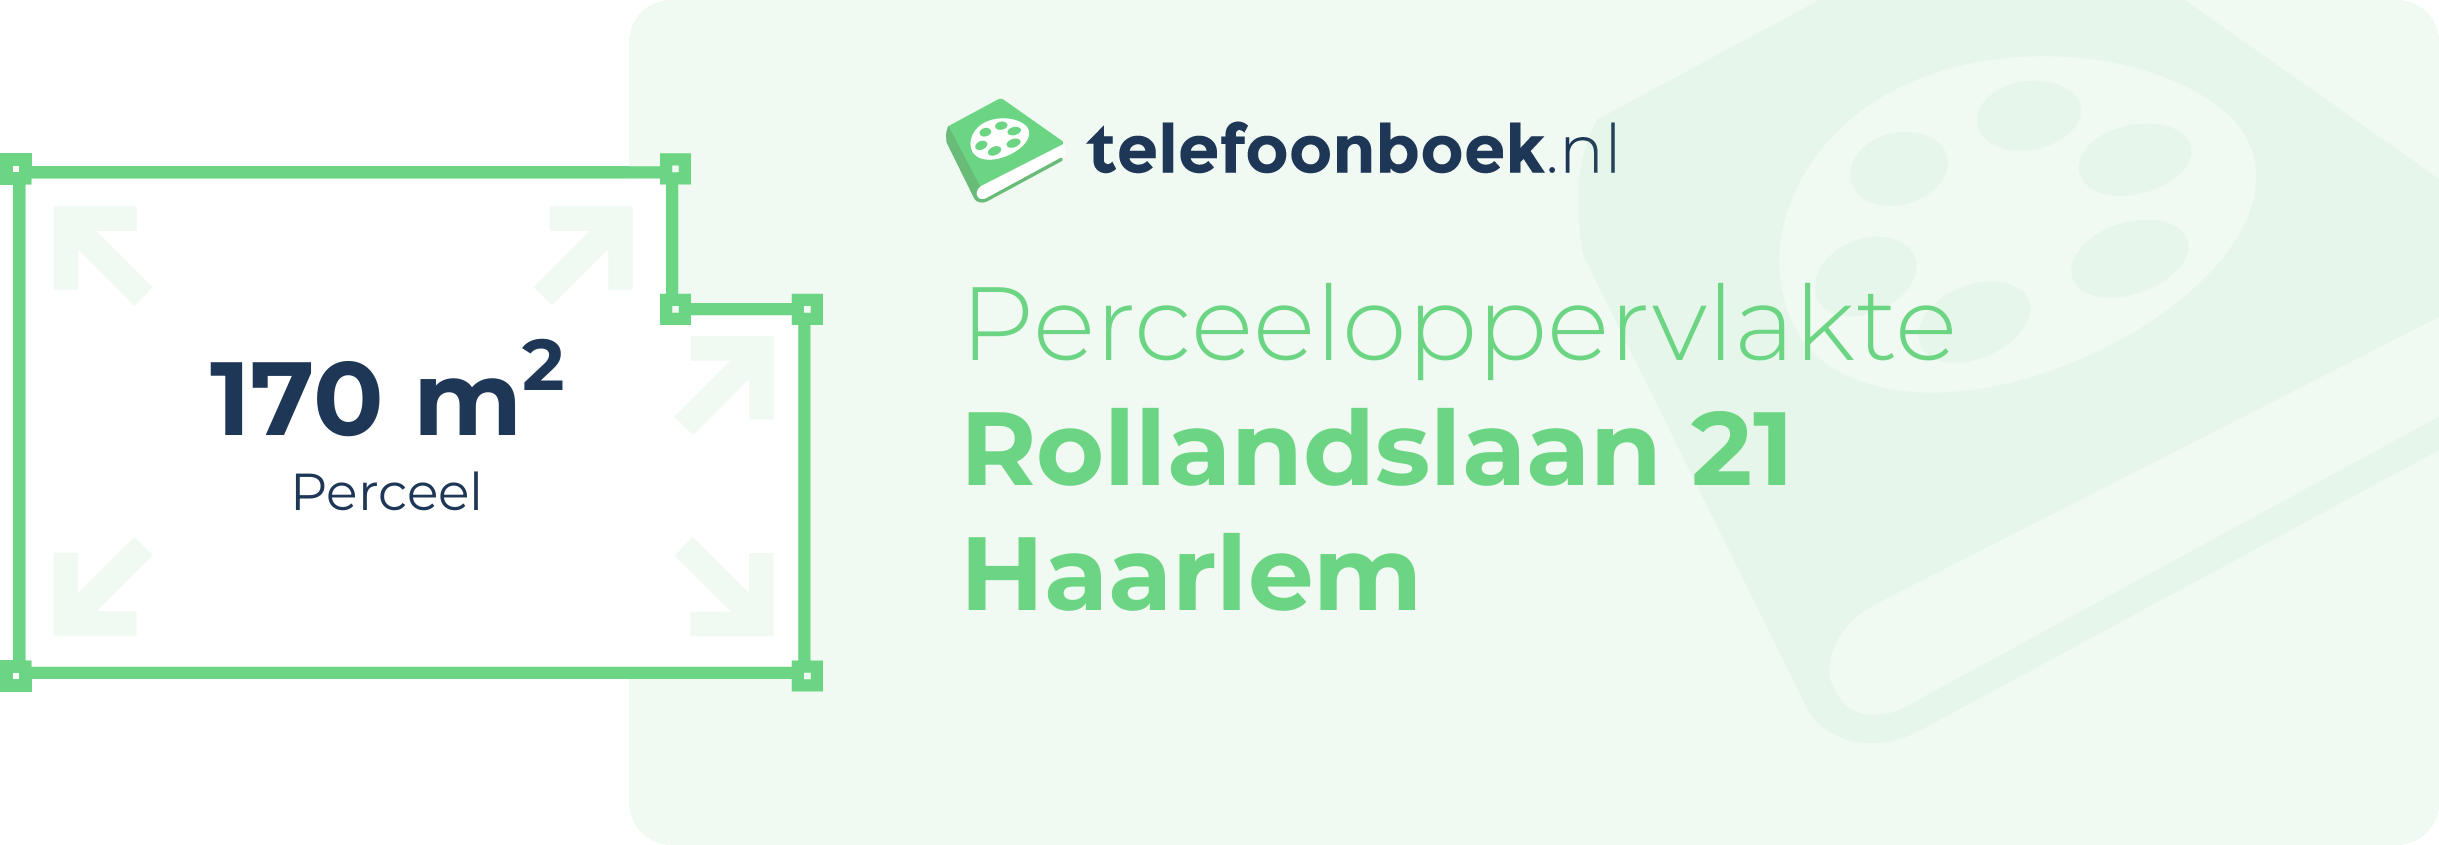 Perceeloppervlakte Rollandslaan 21 Haarlem